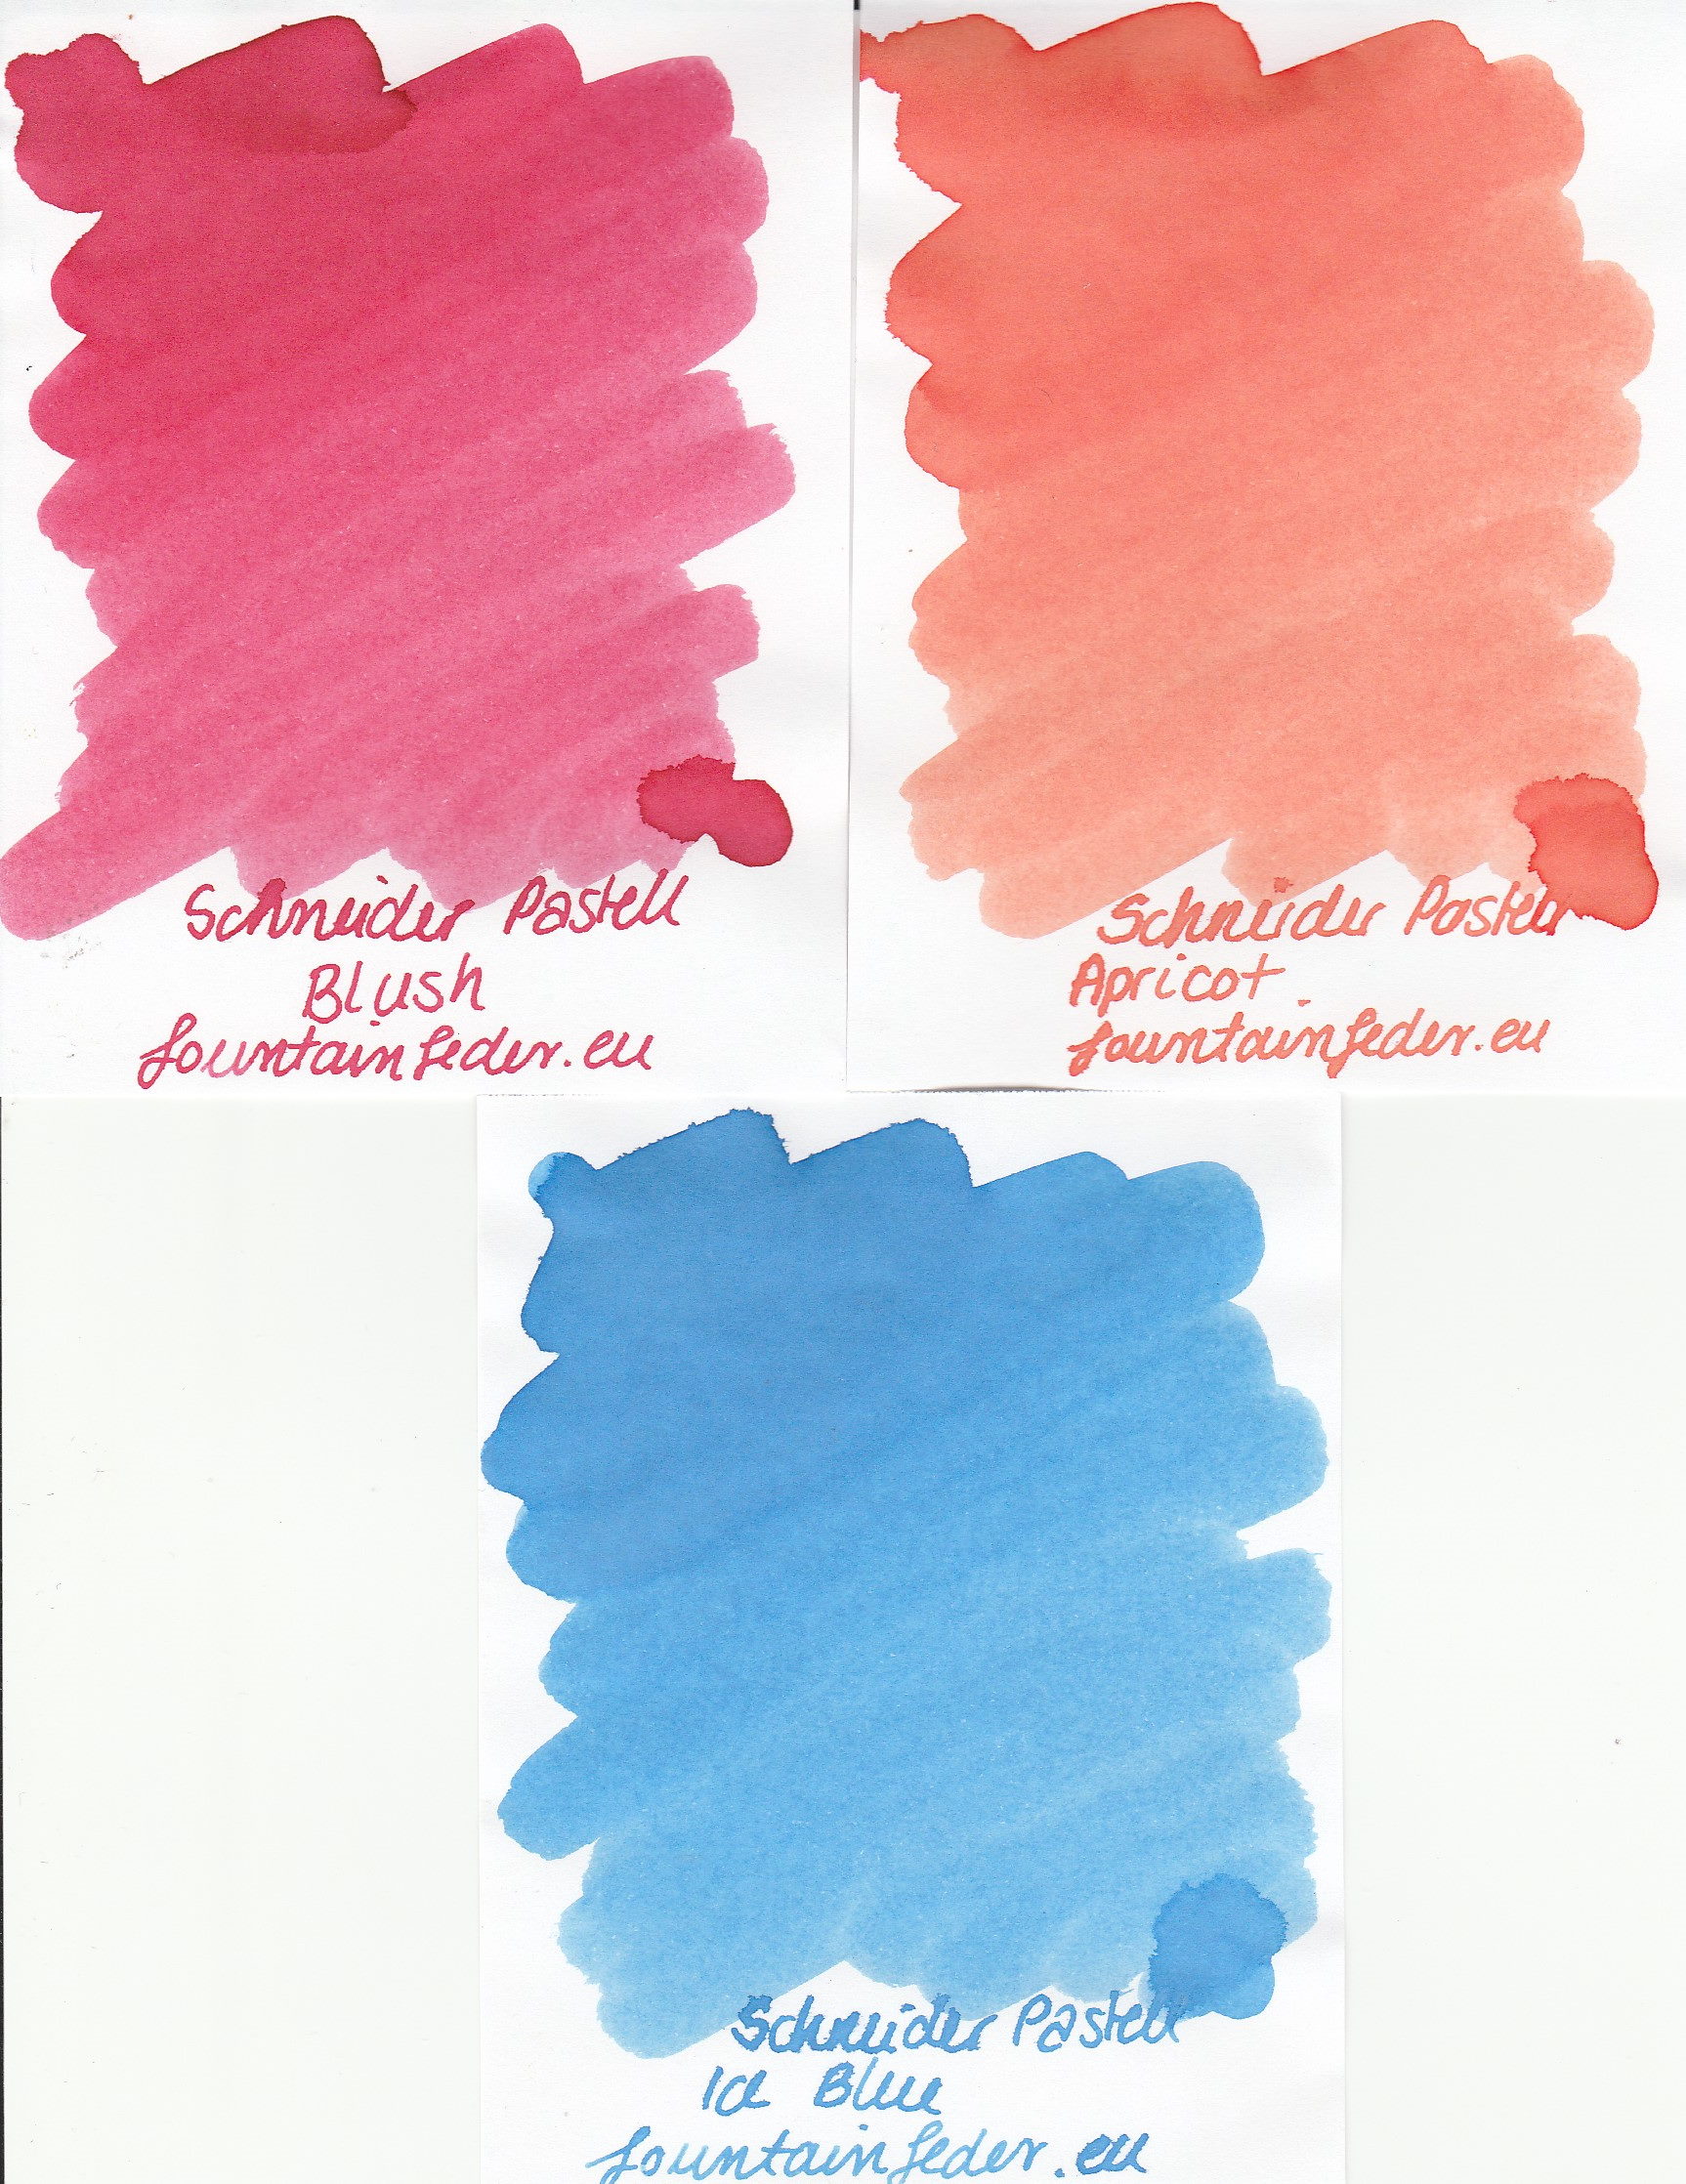 Schneider Pastell Ink Bermuda Blue 15ml